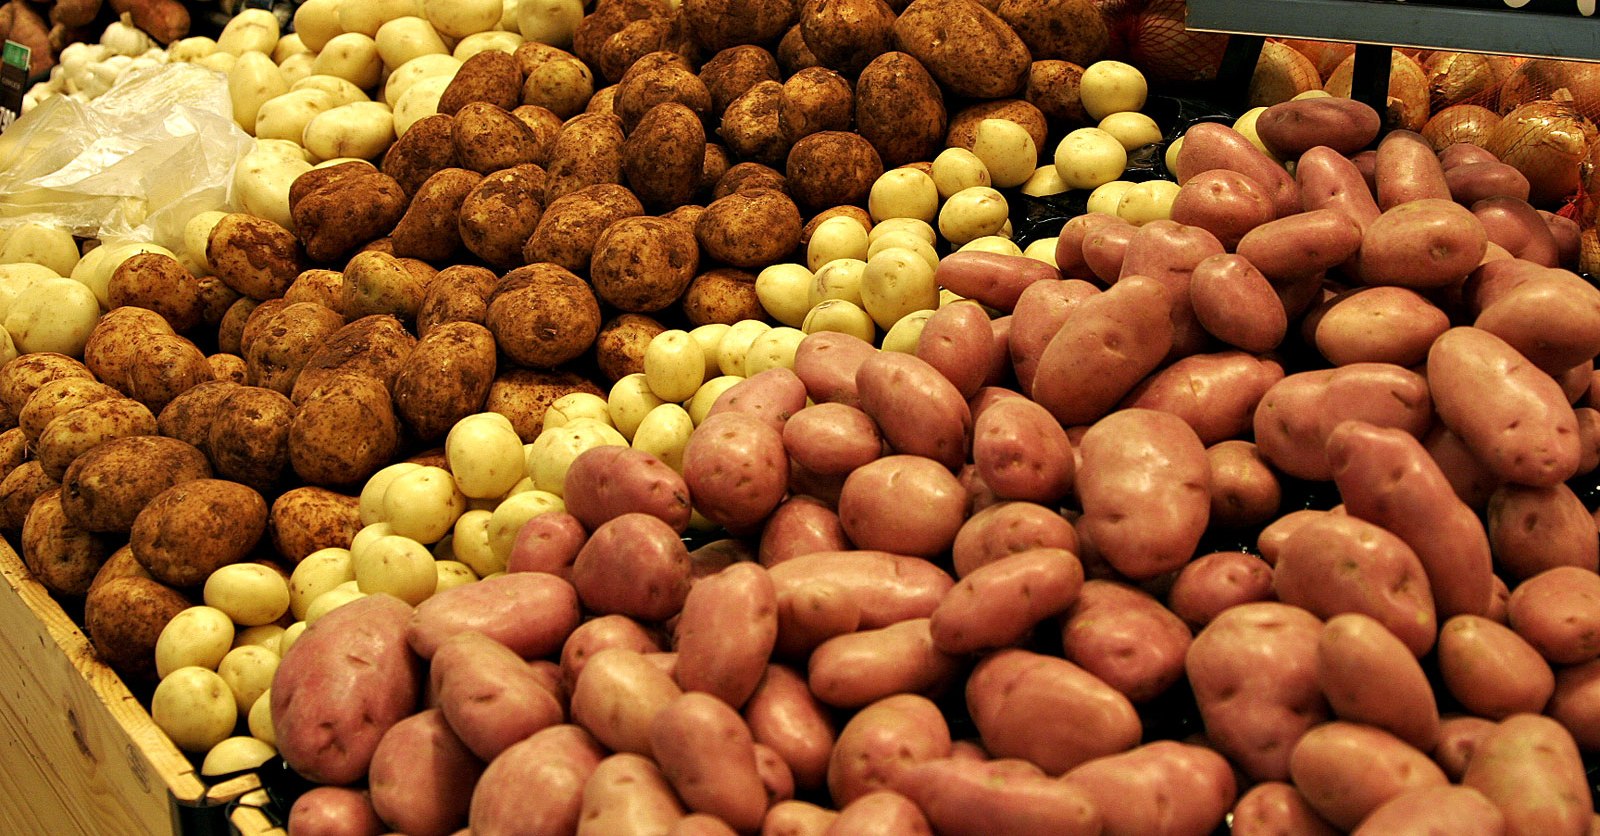 صورة نحو اعتماد آليات تقنية مدروسة كفيلة بامتصاص فائض انتاج محصول البطاطس